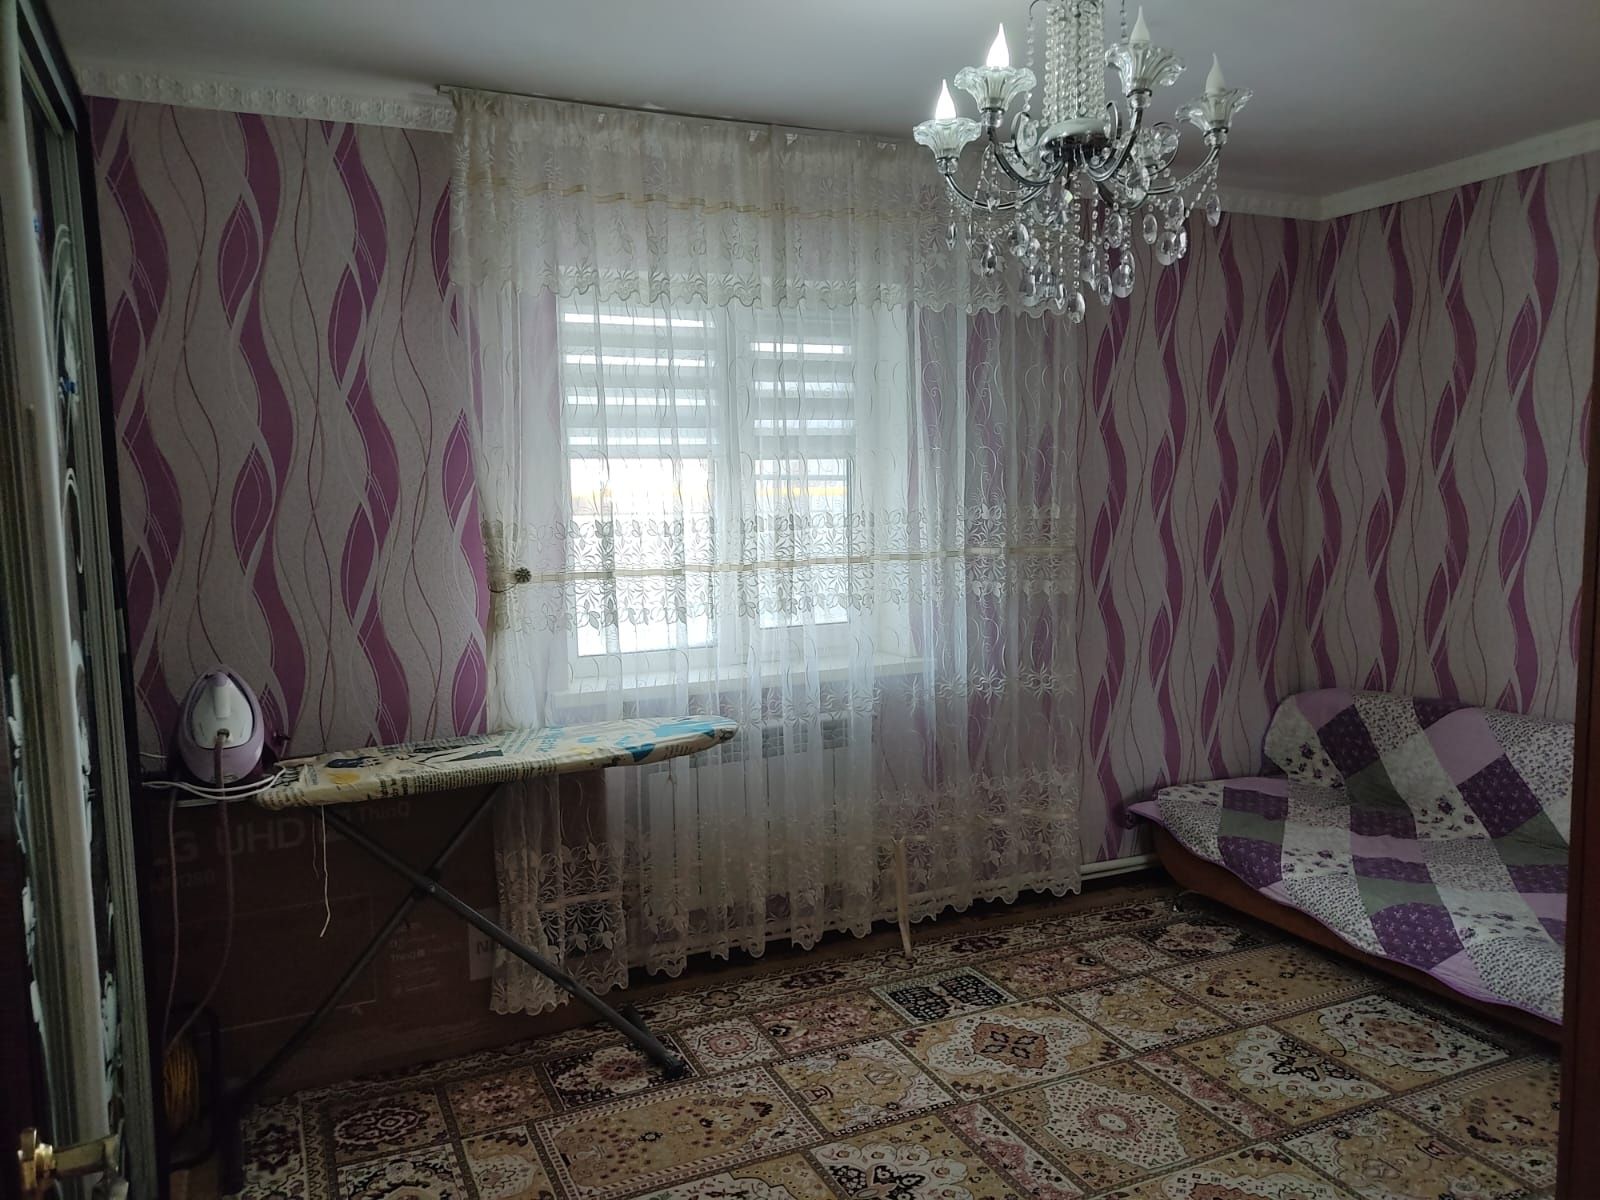 Продается частный дом по ул.Донская,33 (старая станция))